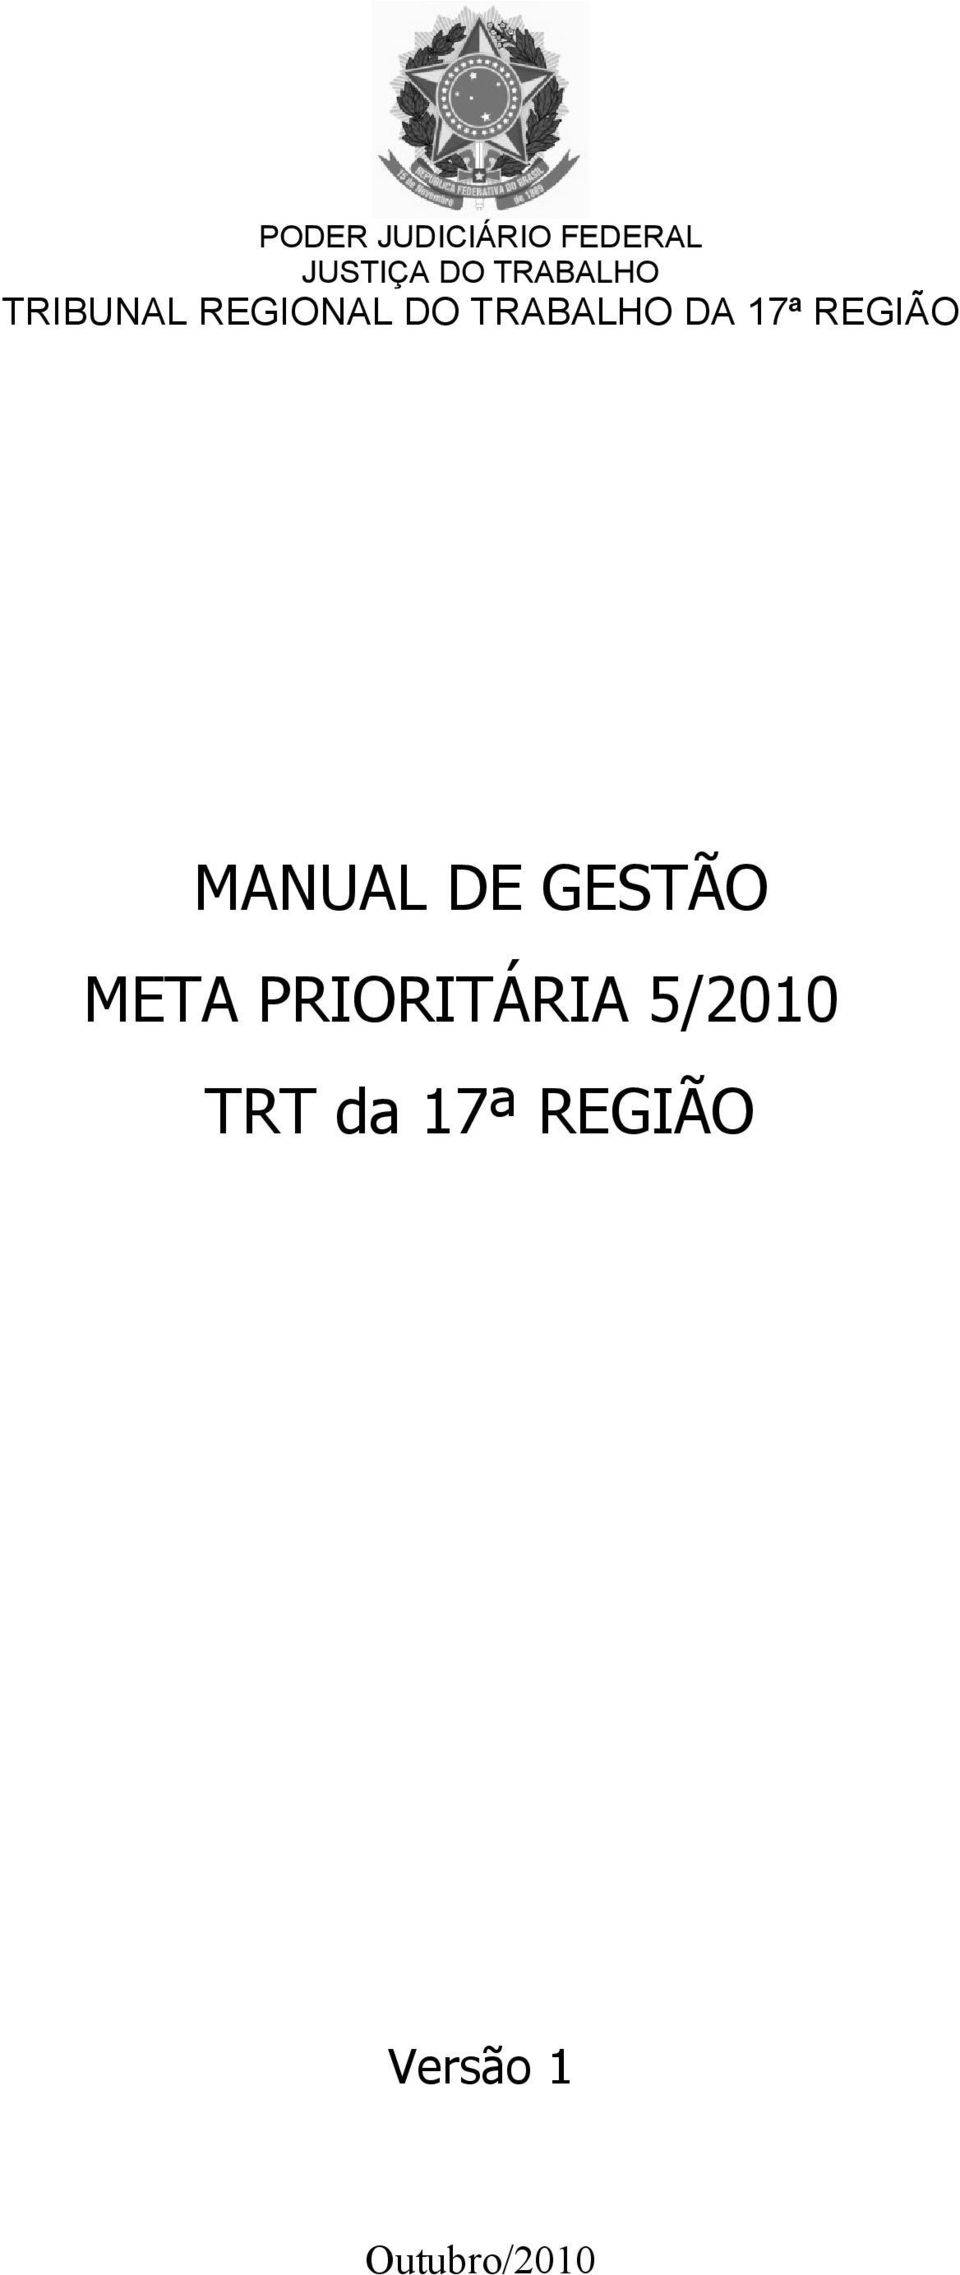 17ª REGIÃO MANUAL DE GESTÃO META